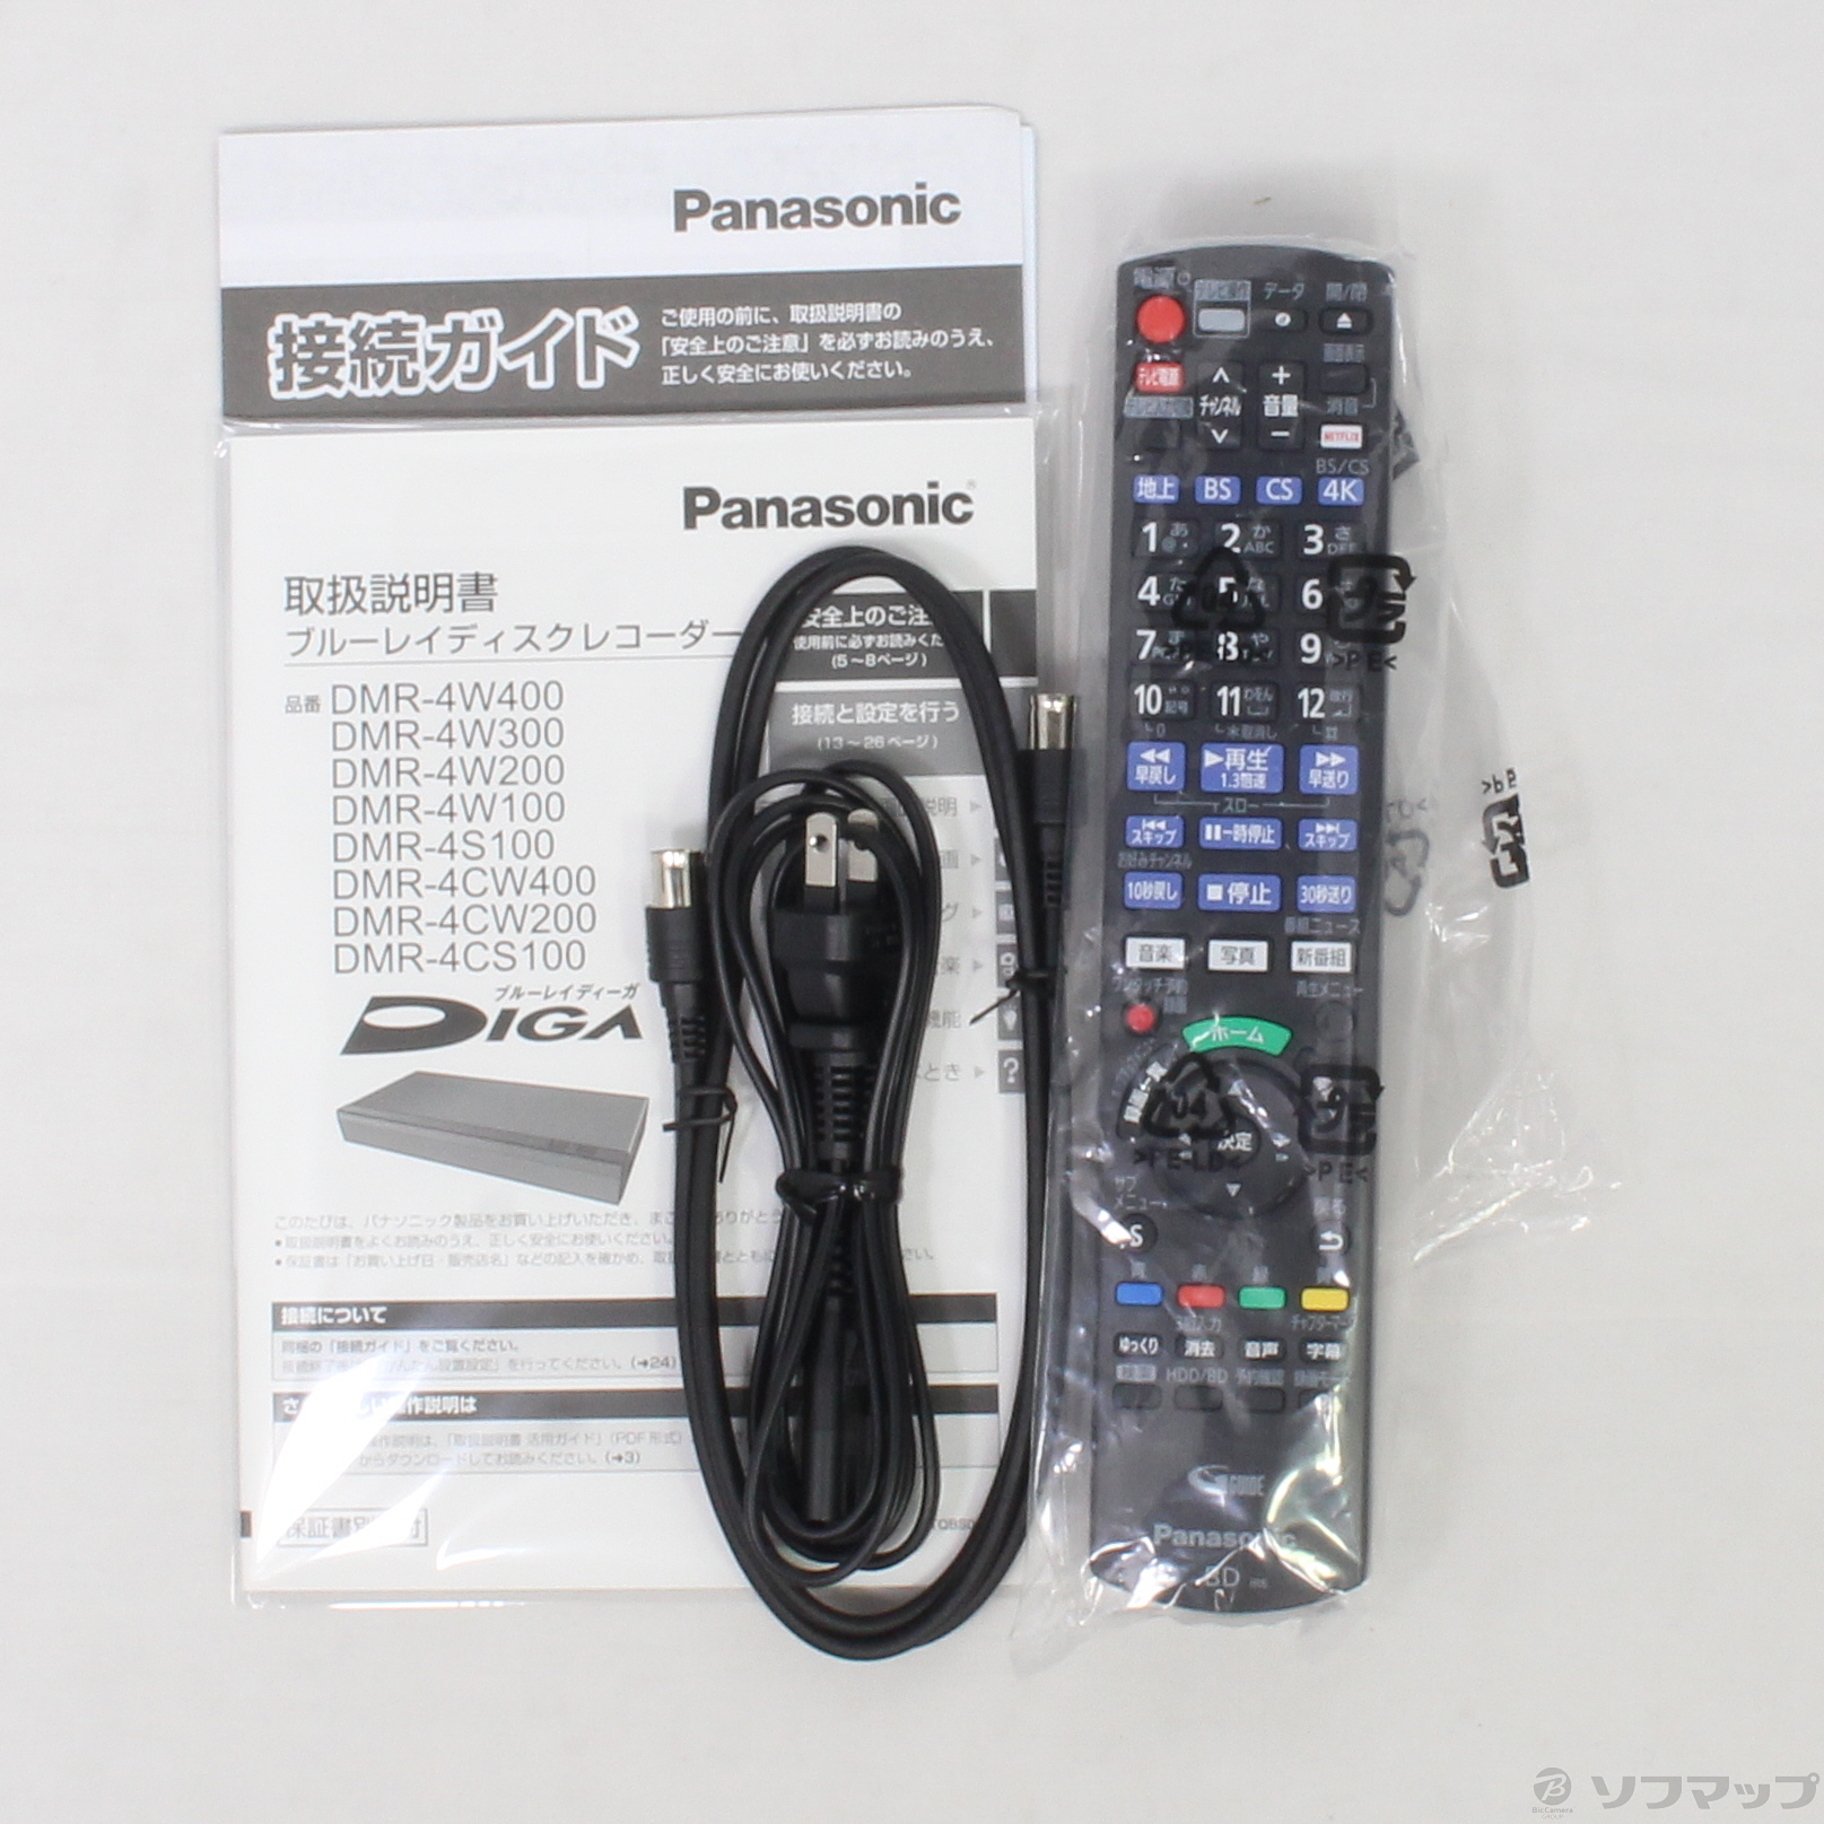 テレビ/映像機器パナソニック ブルーレイレコーダー DMR-4W400 